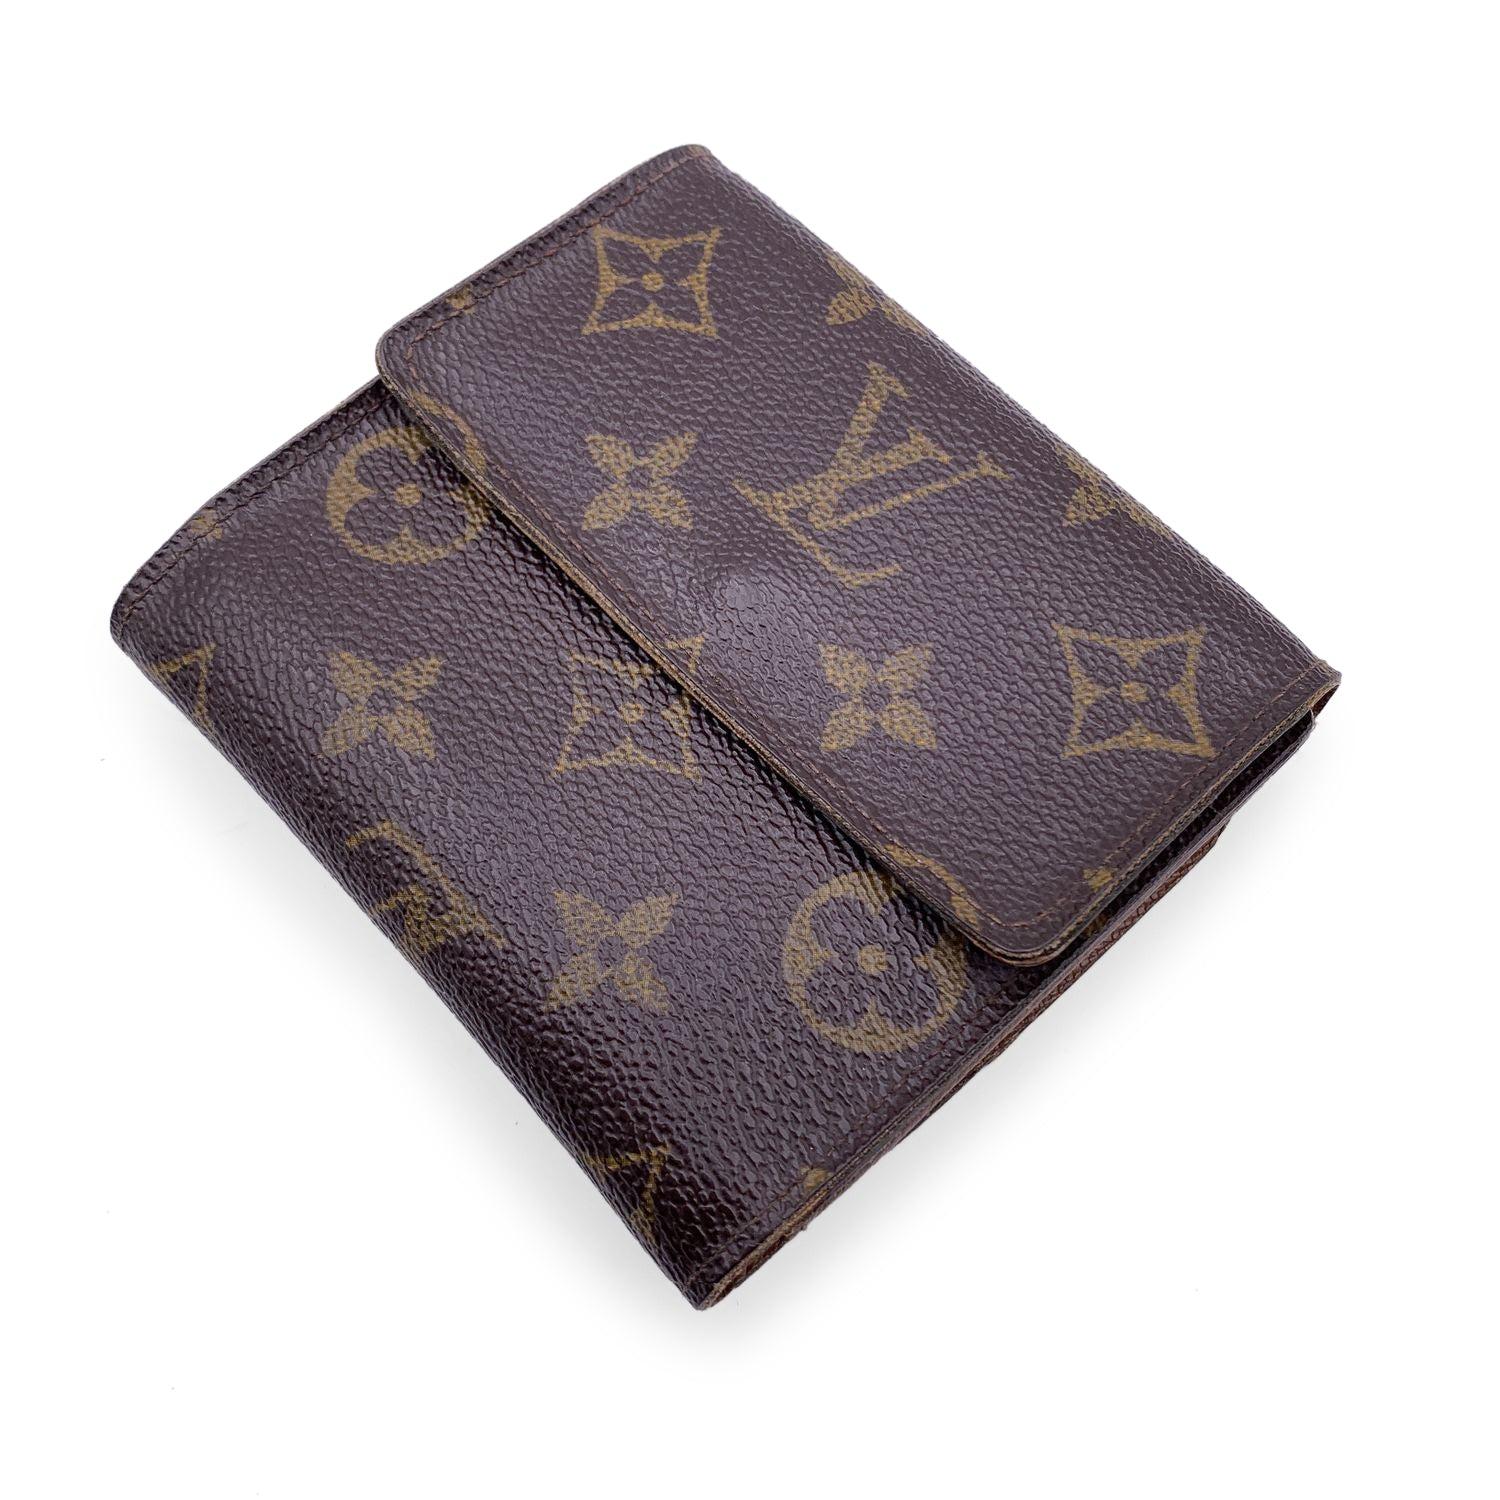 Portefeuille Louis Vuitton 'Elise' de forme carrée avec double rabat latéral, mode. M61654. Confectionné en toile monogramme marron. Doublure en cuir de couleur bronze. 1 compartiment à monnaie sur un côté et une section bifold sur l'autre côté,